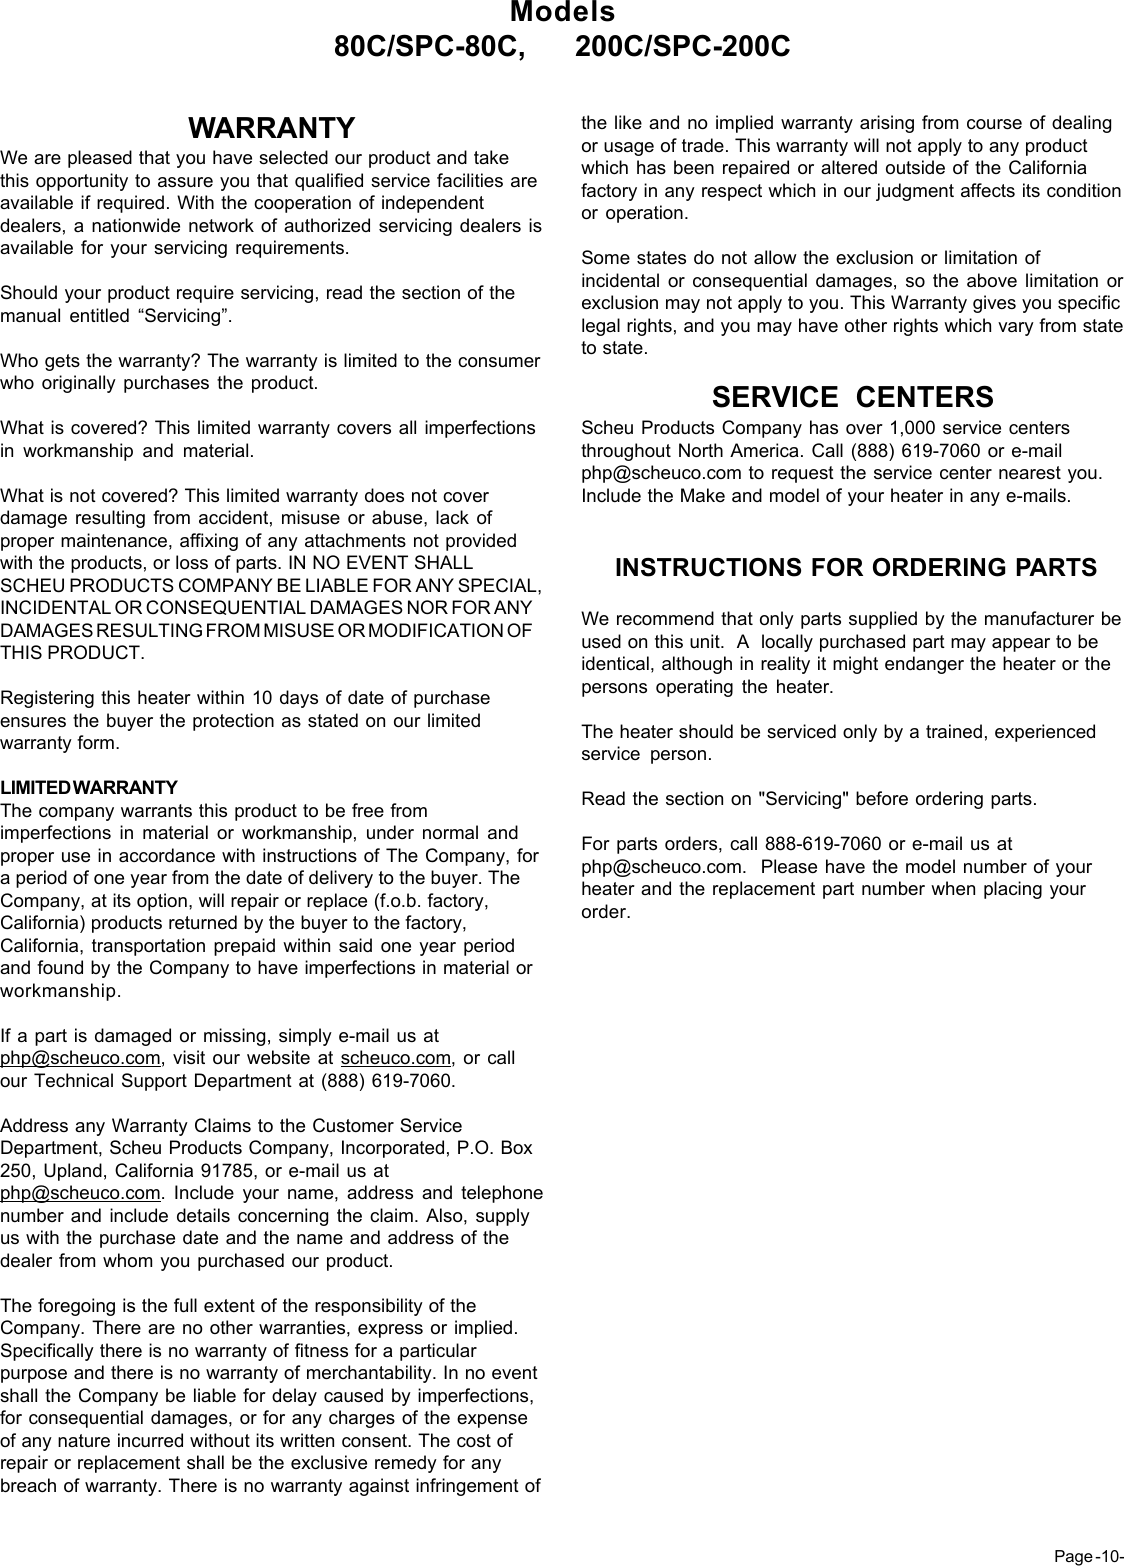 Page 10 of 12 - Desa-Tech Desa-Tech-200-C-Owners-Manual 80C_200C